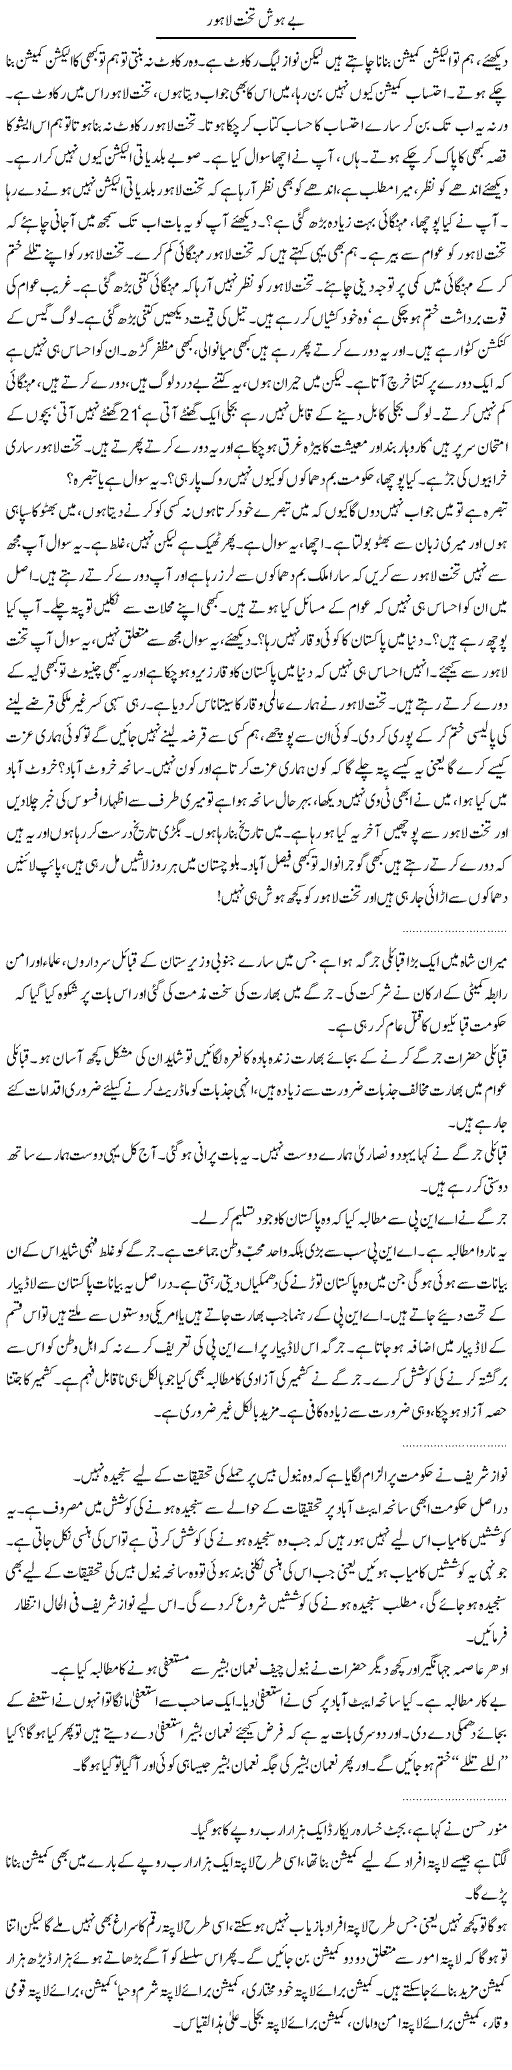 Punjab Government Express Column Abdullah Tariq 28 May 2011